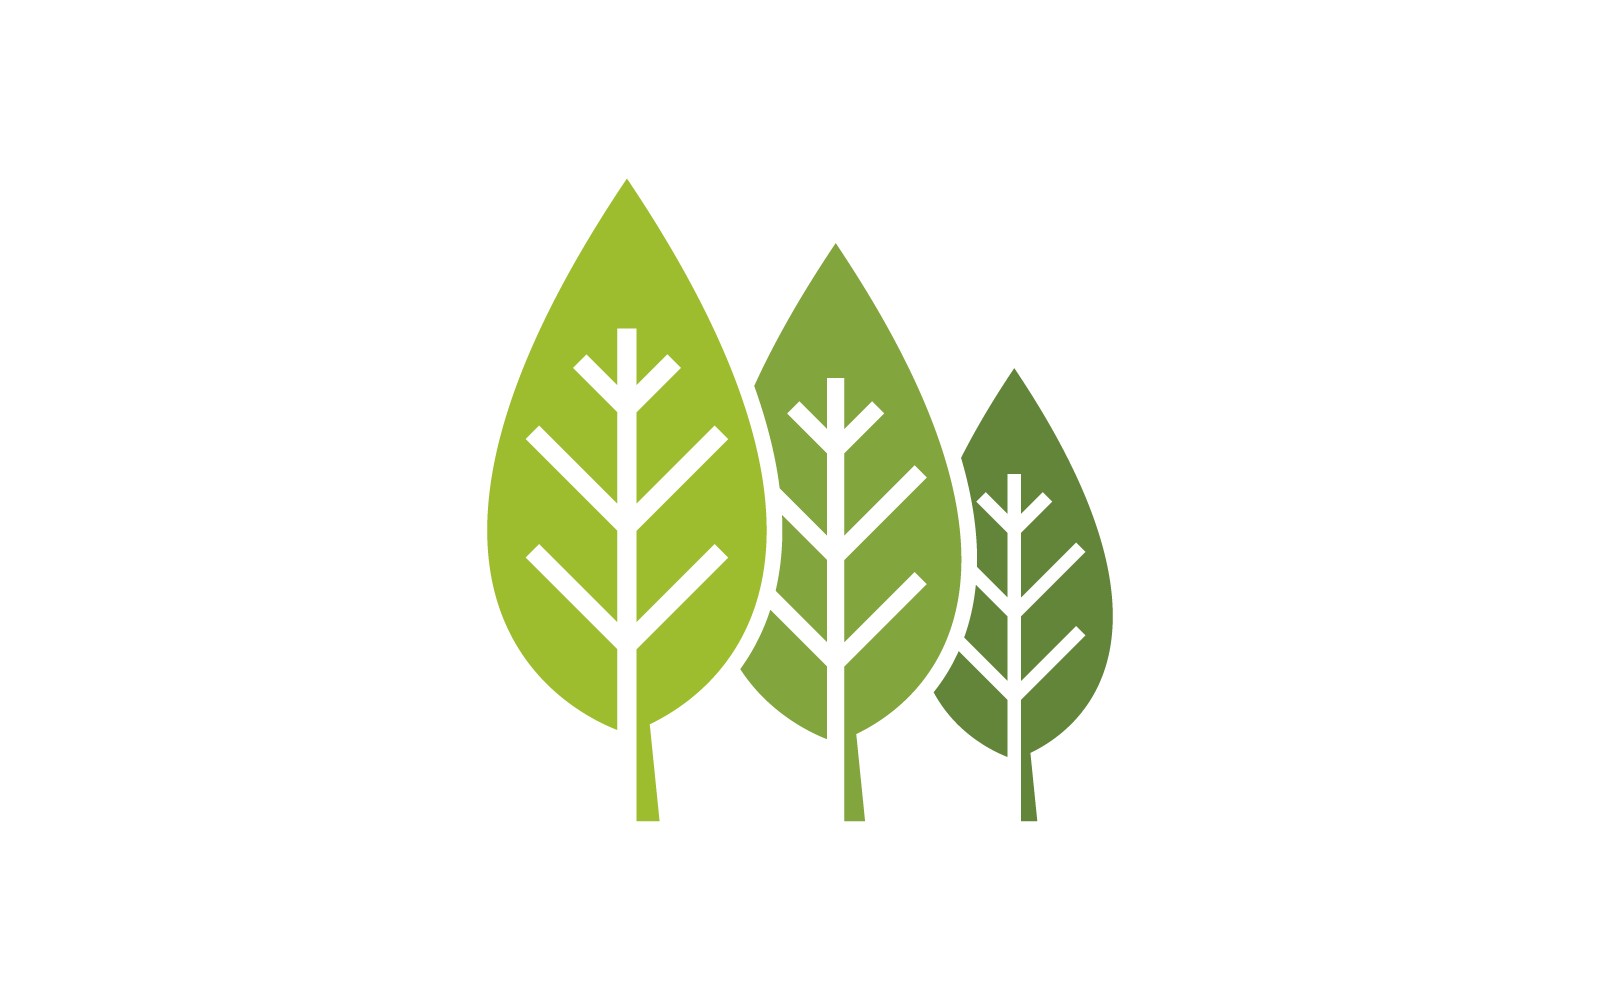 Green leaf nature logo flat design